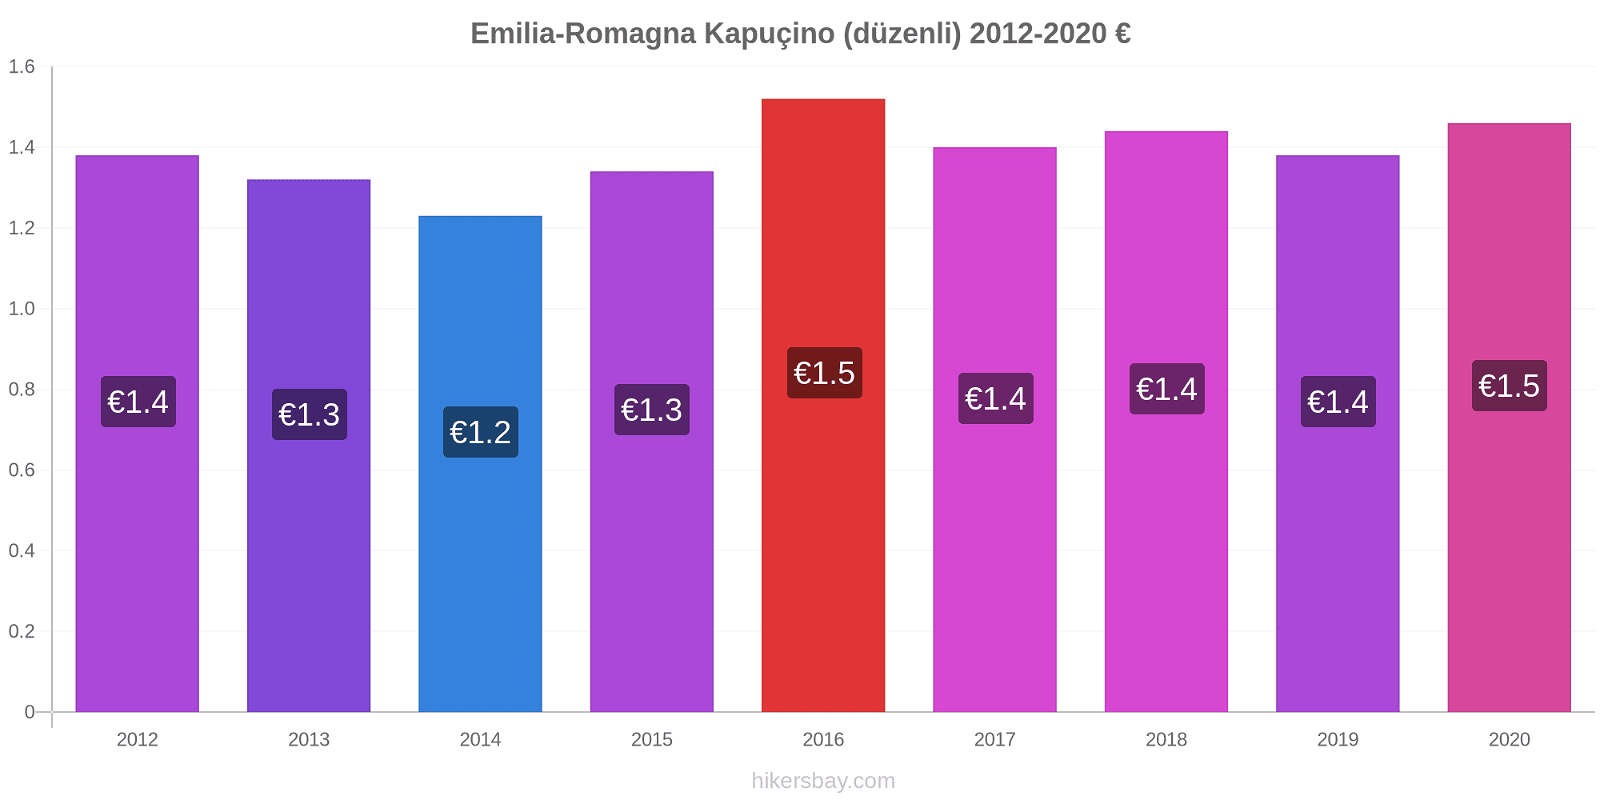 Emilia-Romagna fiyat değişiklikleri Kapuçino (düzenli) hikersbay.com